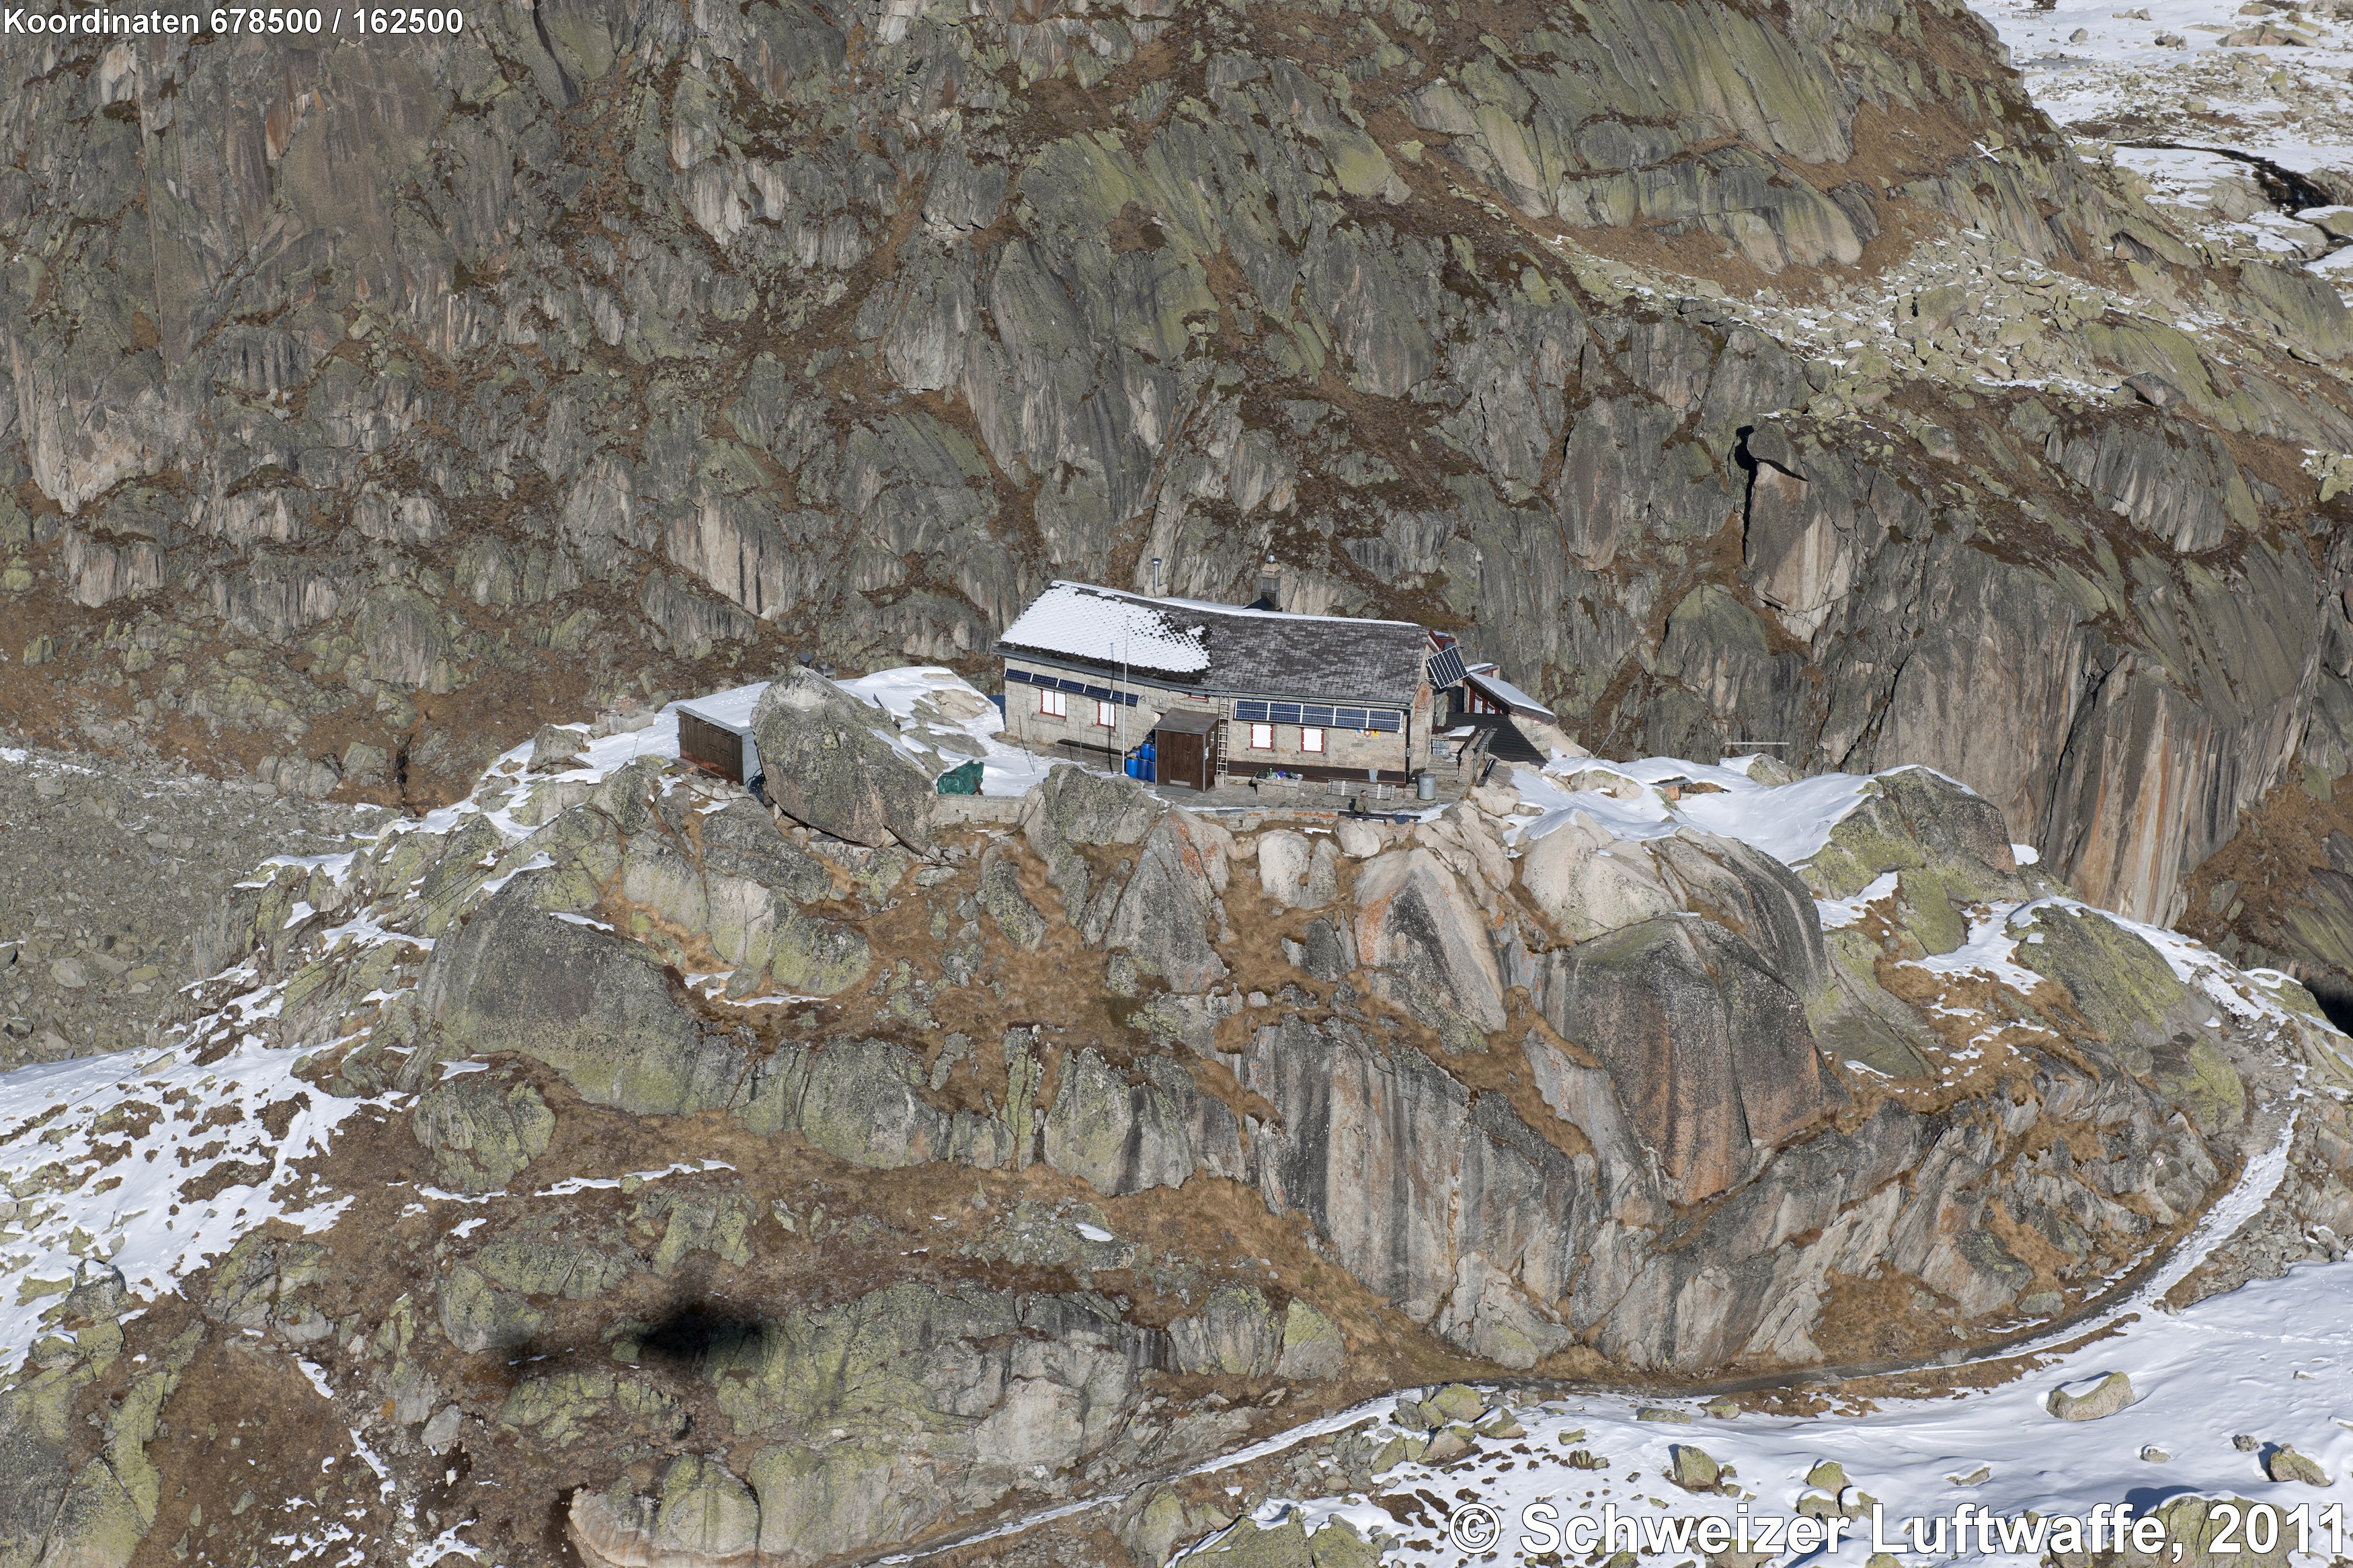 Albert Heim-Hütte SAC (2'678'520.000, 1'162'477.375), 2543 m.ü.M., Gebiet Furkapass, am Fuss des Tiefengletschers